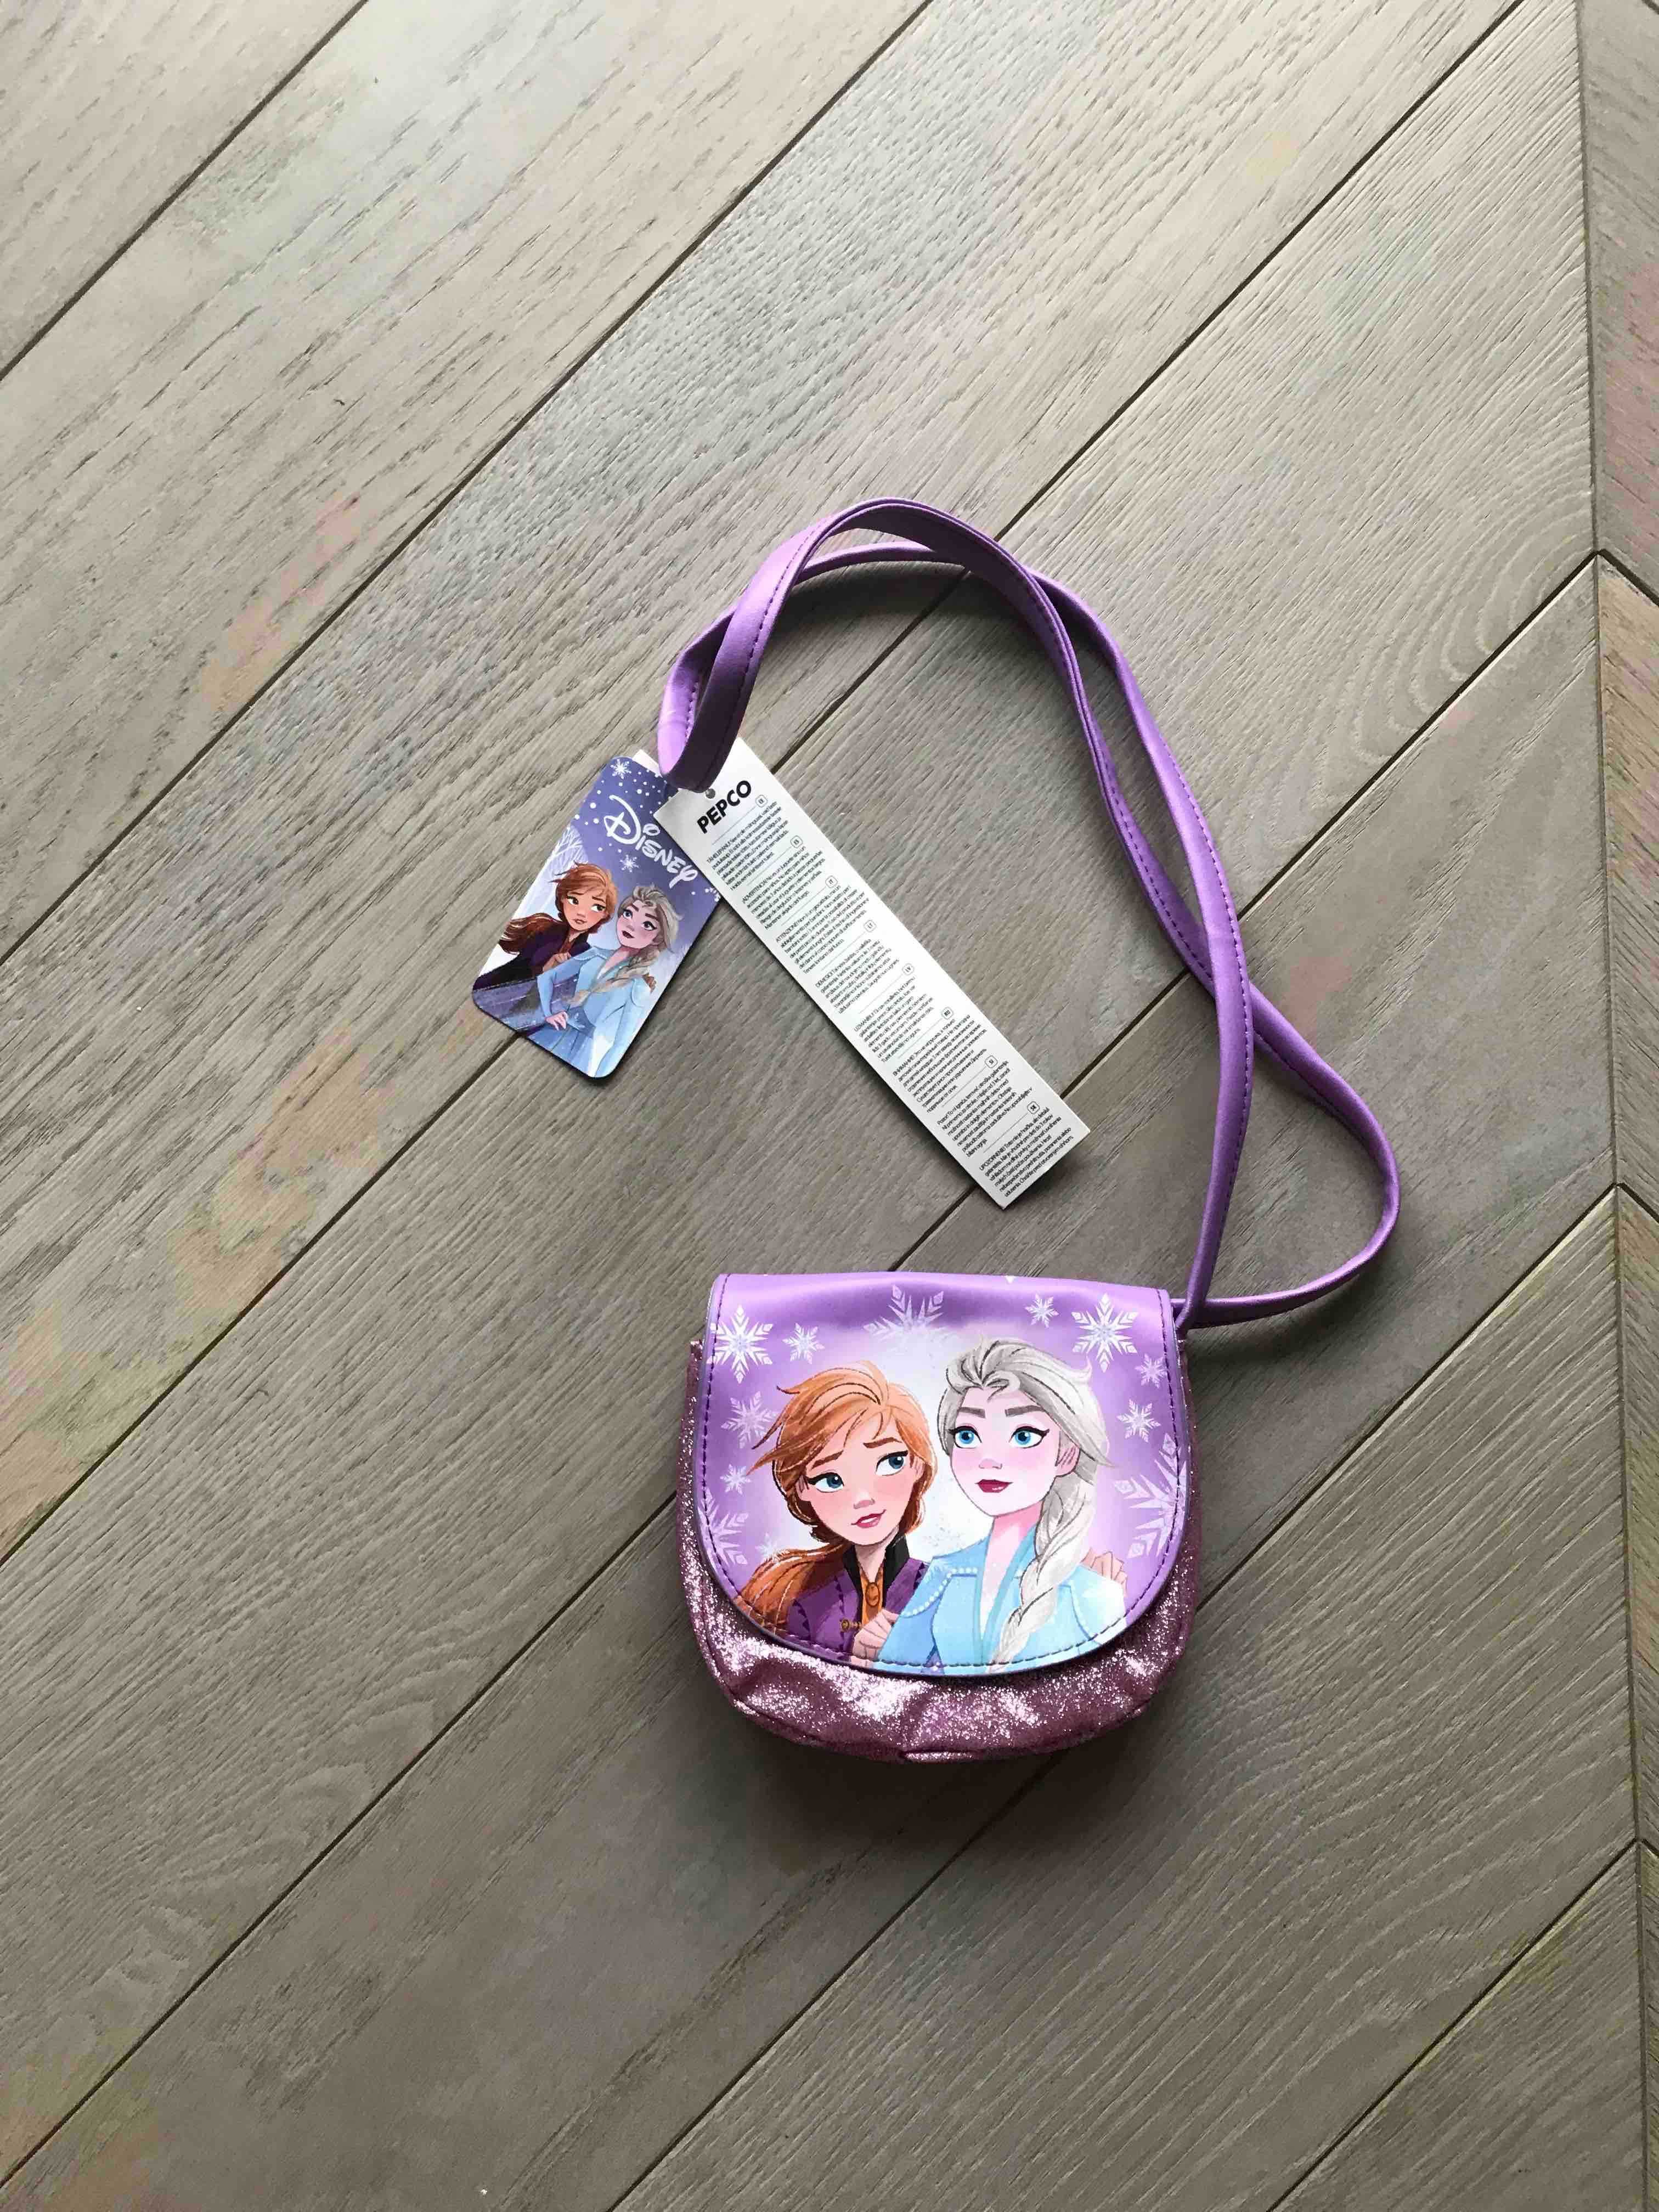 nowa torebka dla dziewczynki z bajki Frozen